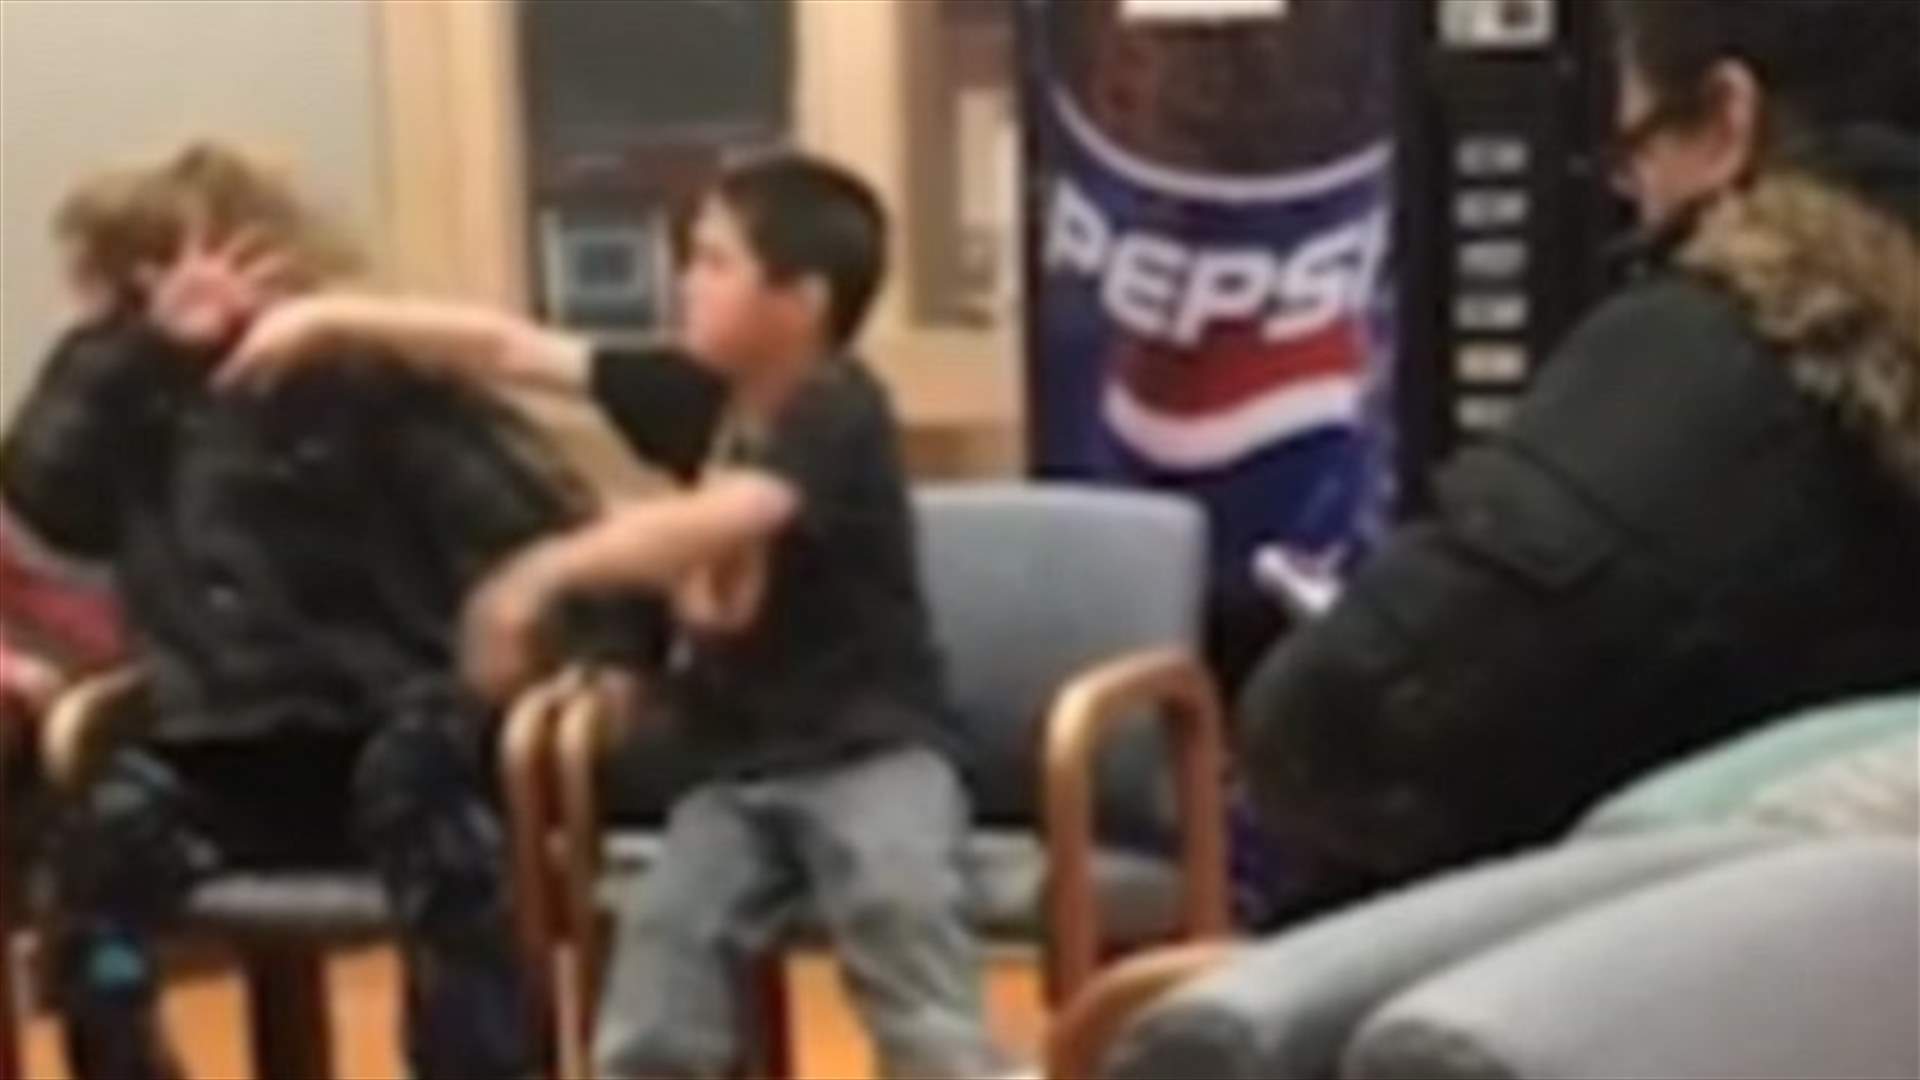 بالفيديو: طفل يضرب والدته ويشدّها من شعرها... في عيادة الطبيب!